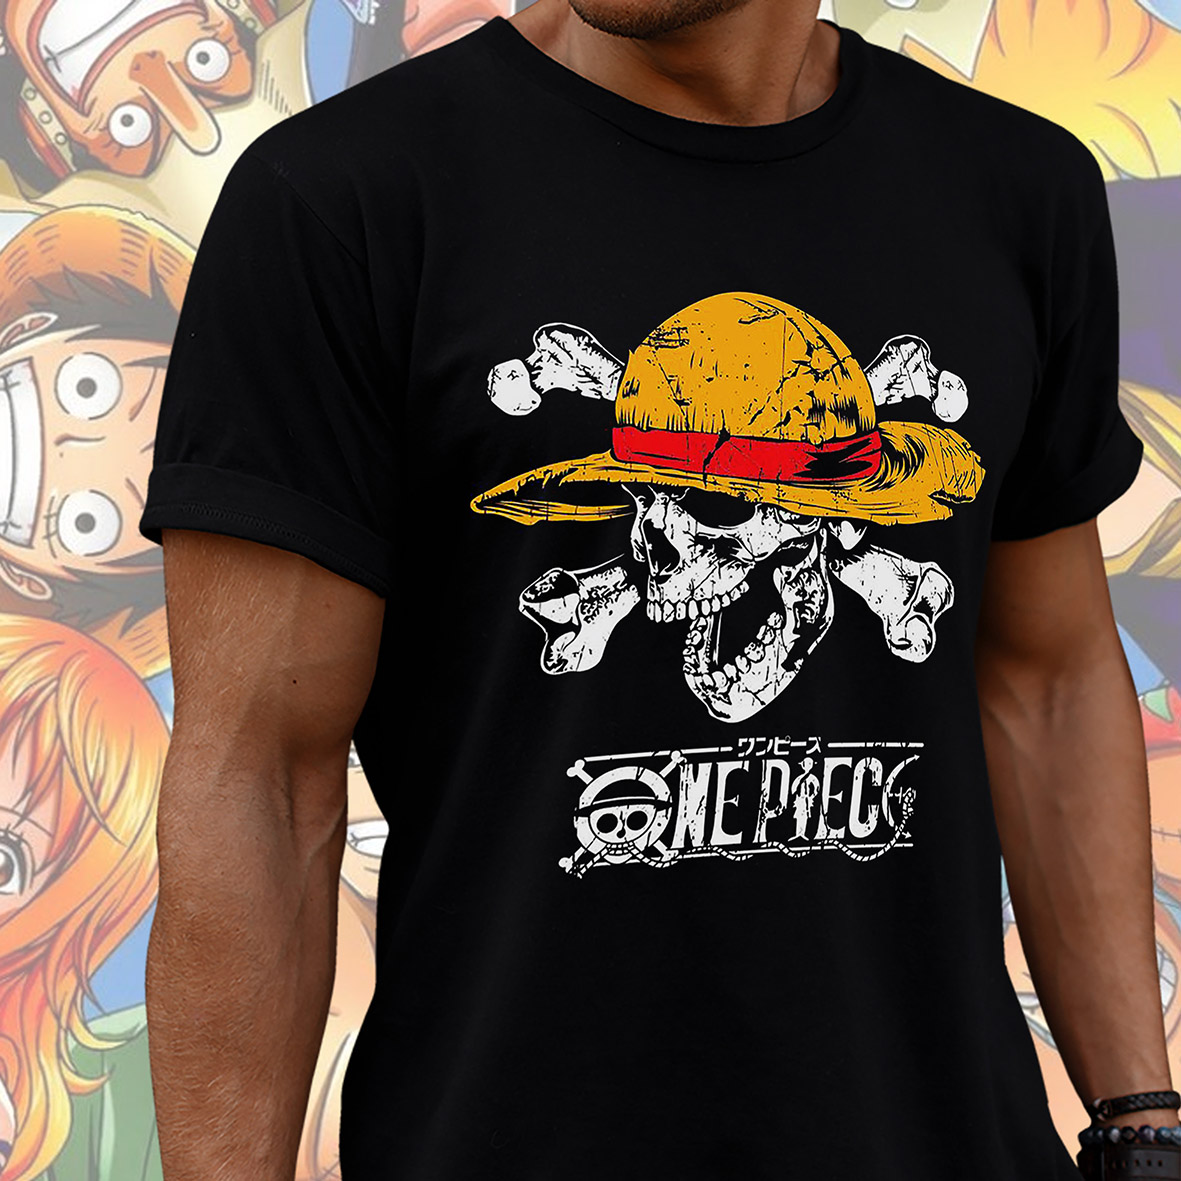 Camiseta Unissex One Piece Os Piratas do Chapéu de Palha Monkey D. Luffy  Roronoa Zoro (Preto) - CD - Toyshow Tudo de Marvel DC Netflix Geek Funko  Pop Colecionáveis